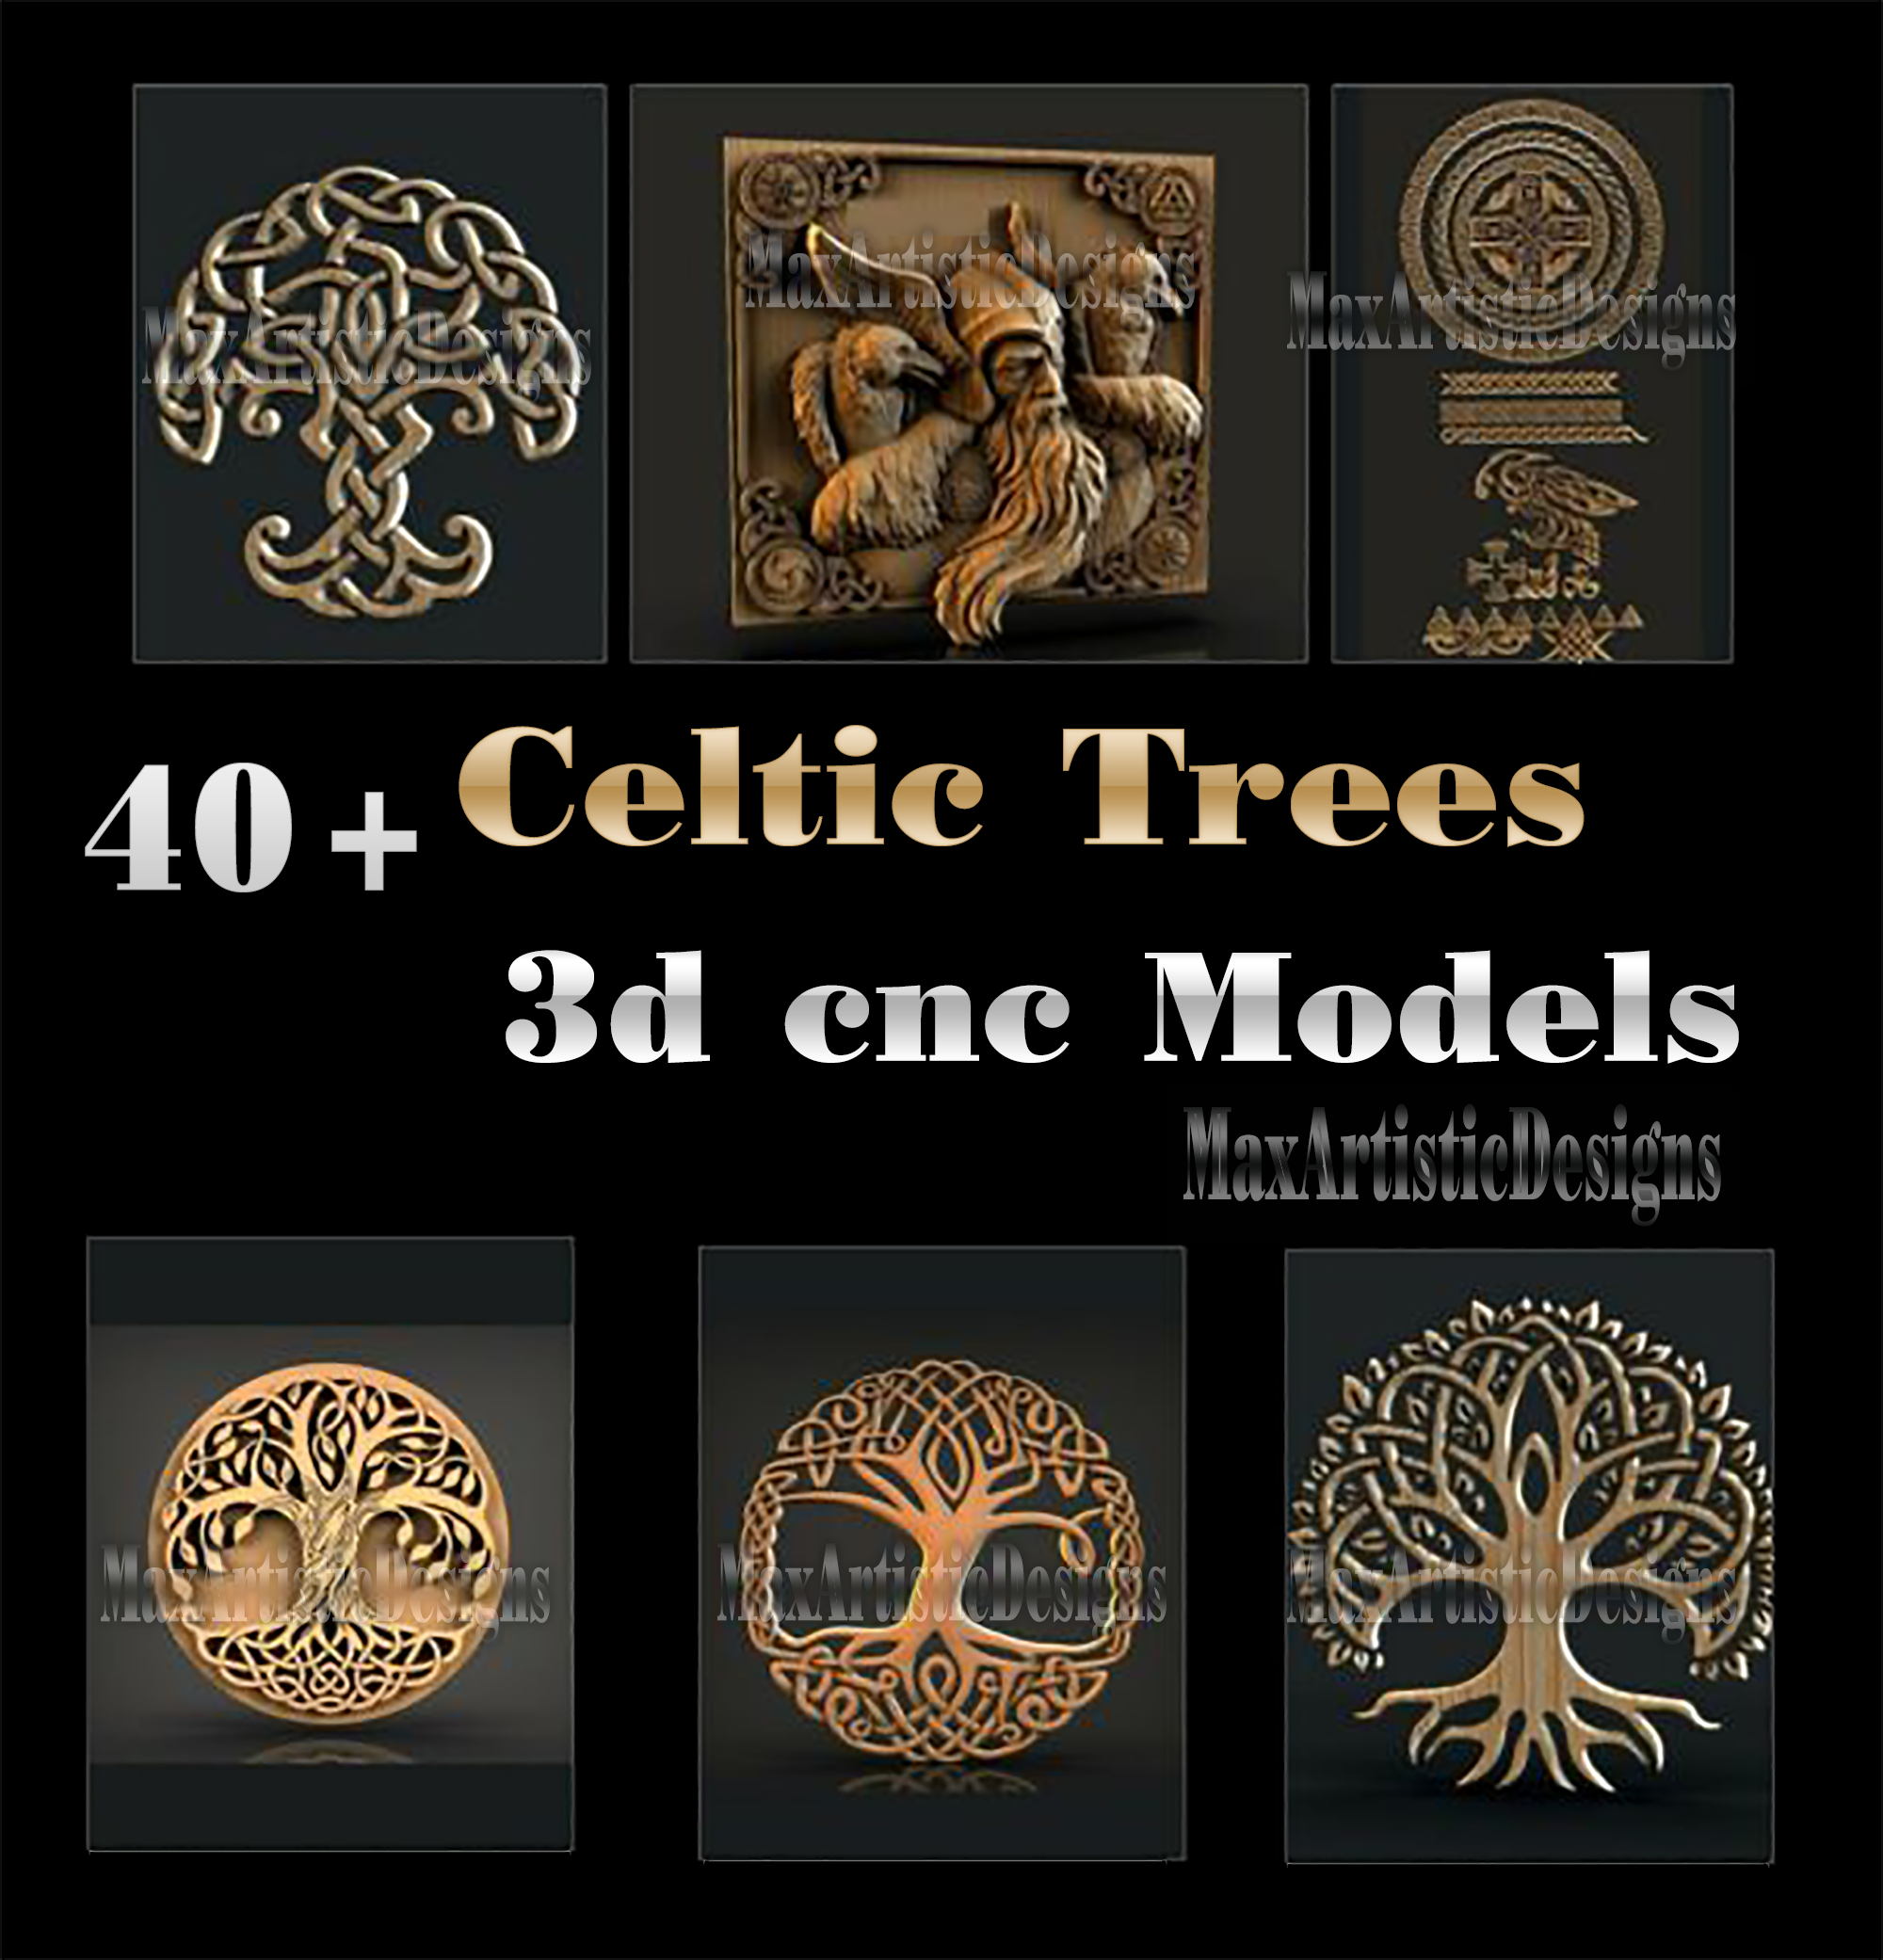 52 pcs 3d ancien celtique/arbre de vie fichiers stl pour artcam, aspire et cnc routeur graveur sculpture téléchargement numérique